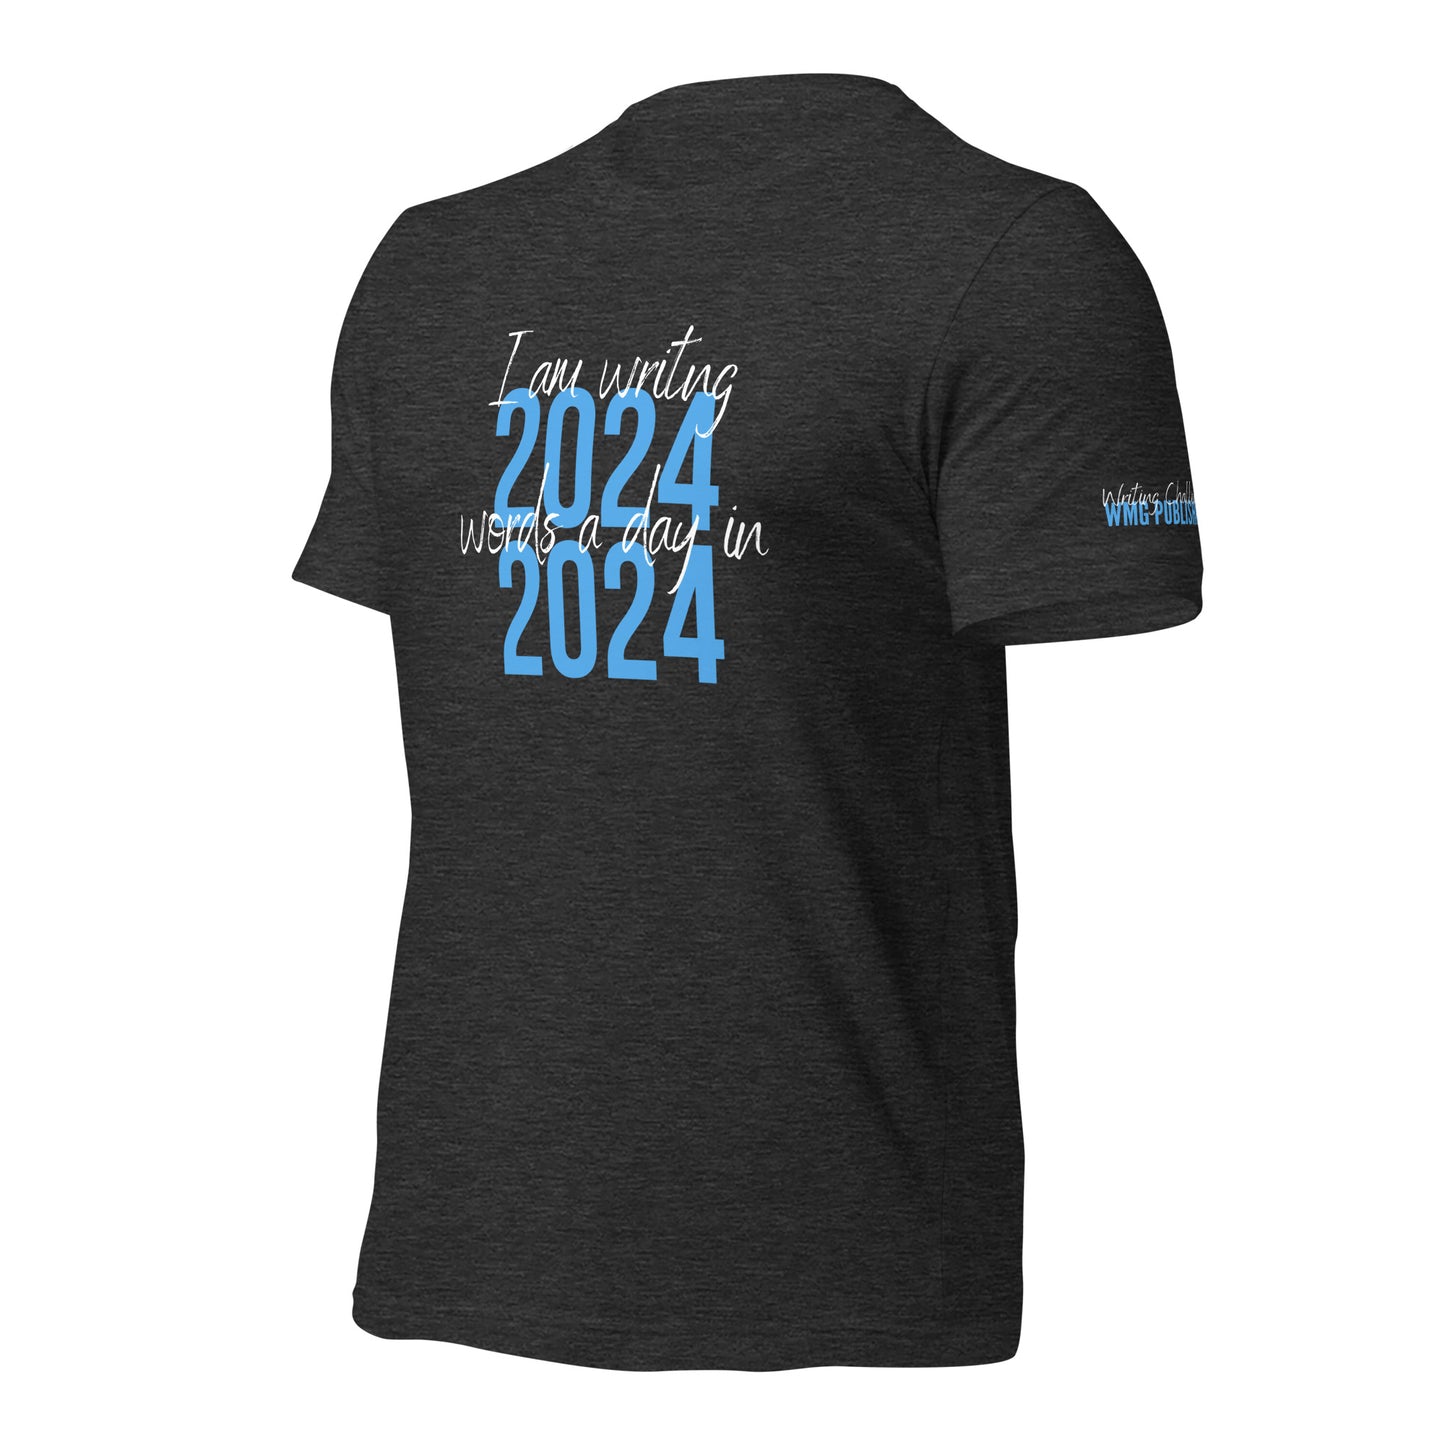 I AM WRITING 2024 WORDS Unisex T-Shirt - WRITING CHALLENGES WMG Publishing